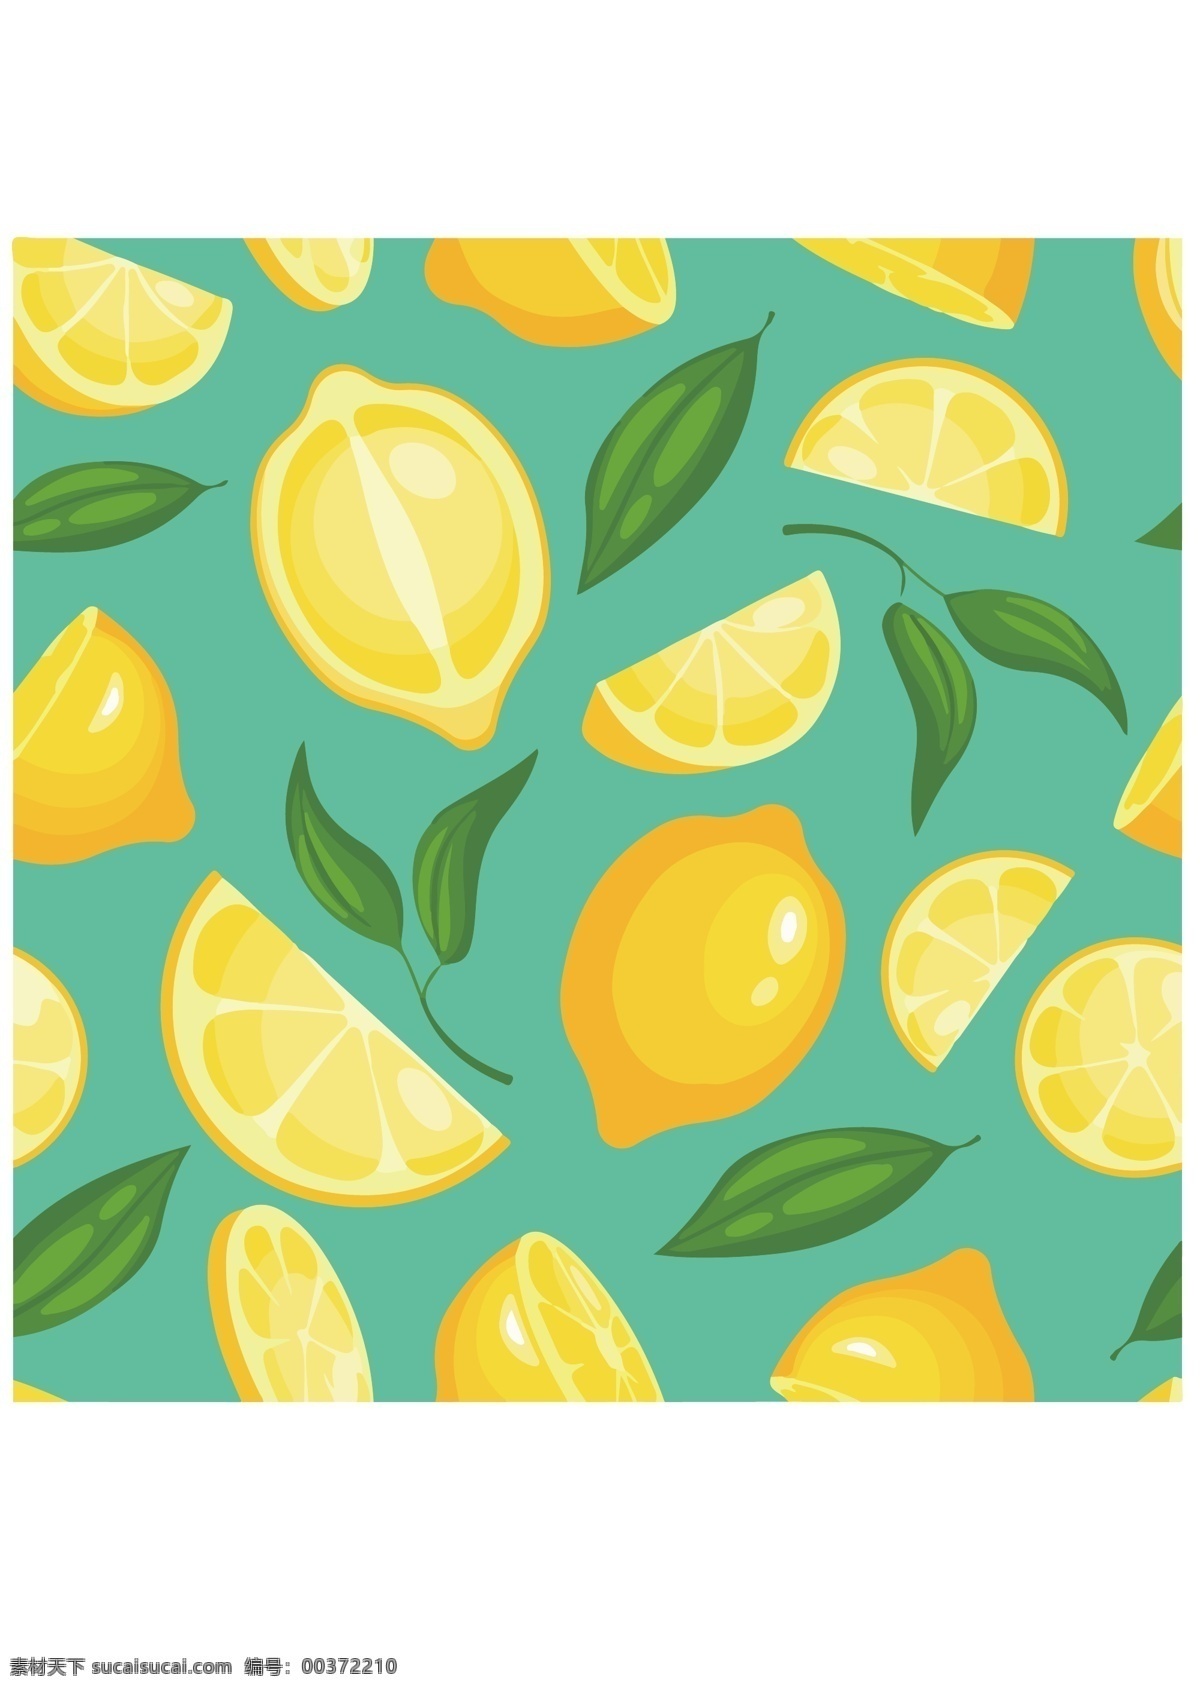 柠檬背景图片 柠檬 黄色柠檬 柠檬切片 柠檬背景 柠檬底纹 柠檬底图 柠檬包装纸 水果装饰 水果 平铺背景 包装 底纹边框 背景底纹 背景底纹素材